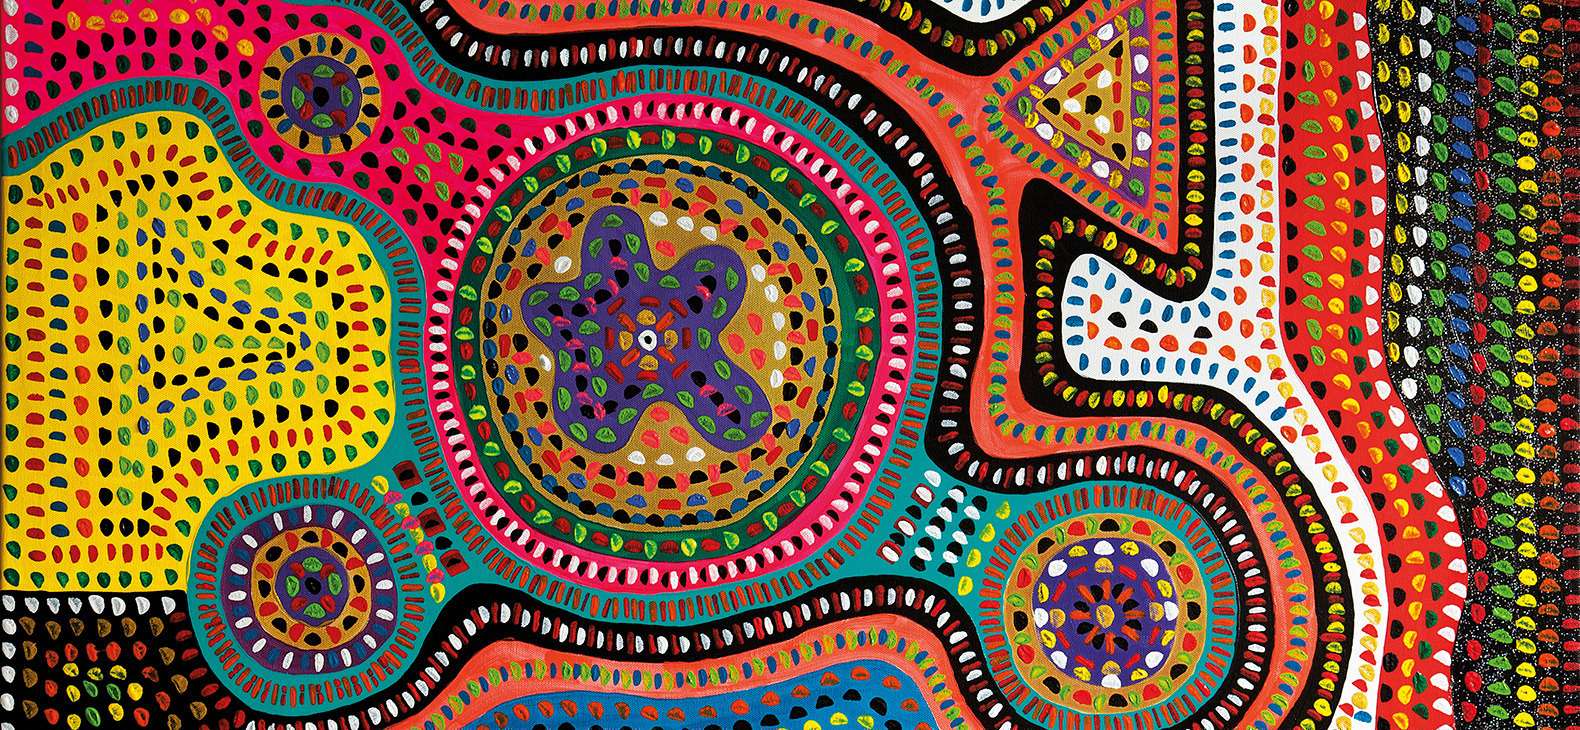 Ein Gemälde des Künstlers Thomas Hobelsberger: "Farben auf Leinwand": Eine Komposition aus organischen, bunten Farbflächen in Rot, orange, Blau, Lila und Gelb. Die Farbflächen werden durch die gleichmäßige Strukturierung durch farbige kleine Kreise zu einem buntgen Ornament.